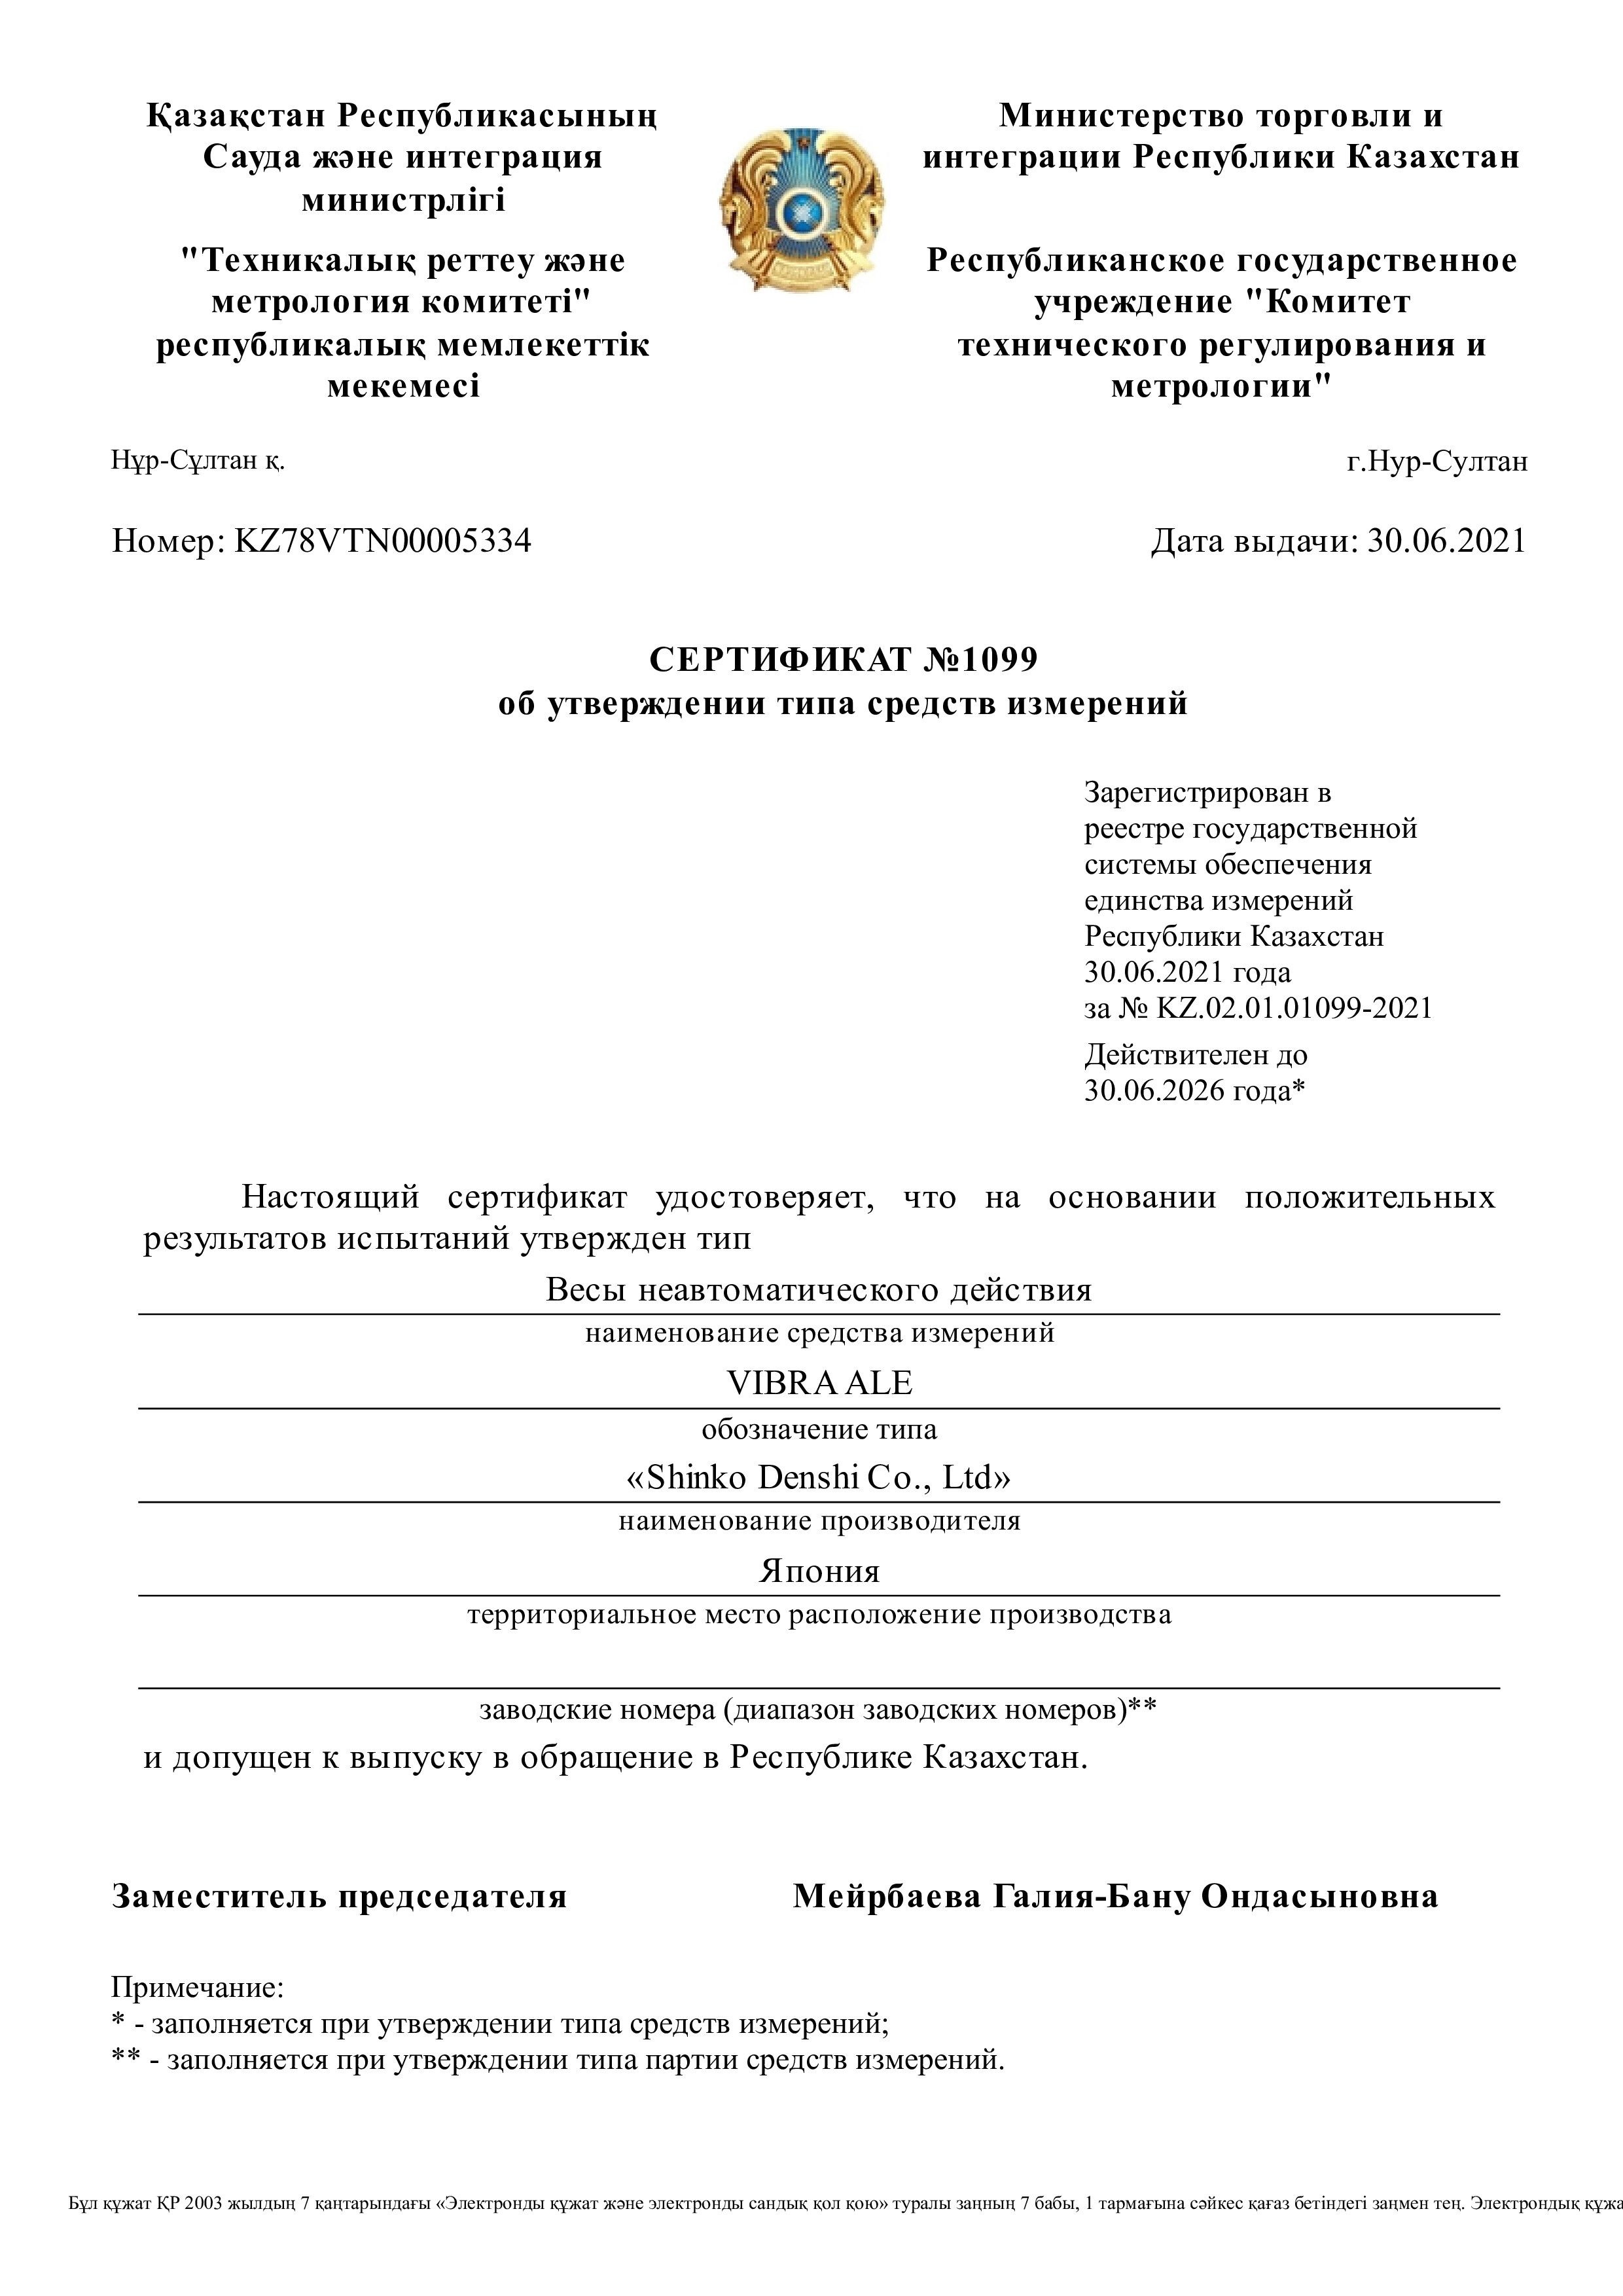 Получены сертификаты утверждения типа средств измерения на лабораторные весы ViBRA серии ALE и аналитические весы ViBRA HT в Республике Казахстан.